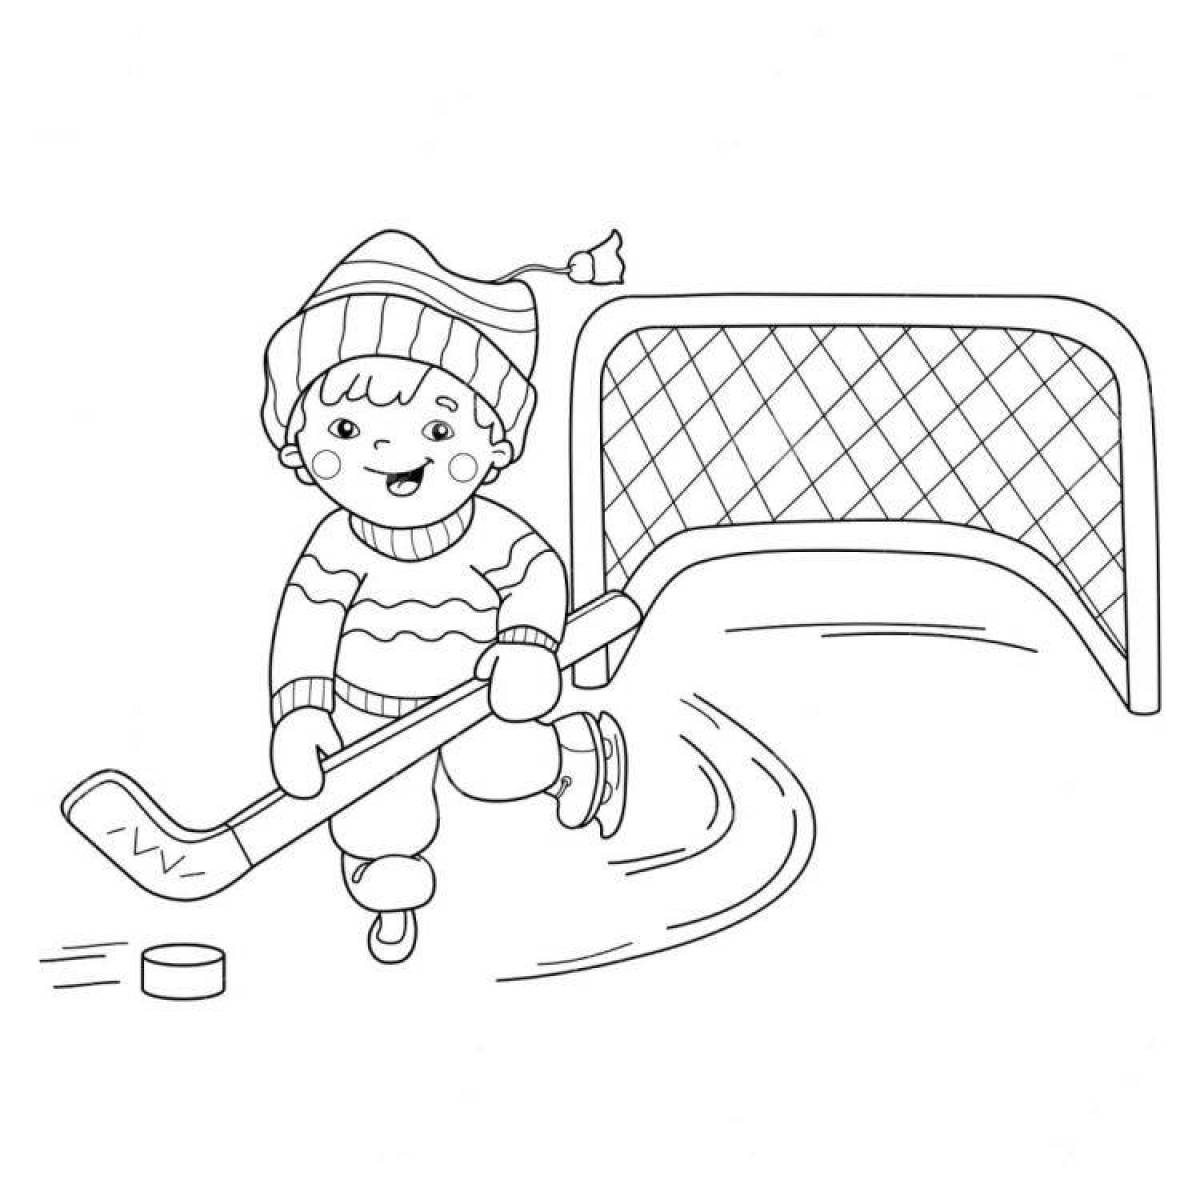 Волшебная страница раскраски зимних видов спорта для детей 4-5 лет